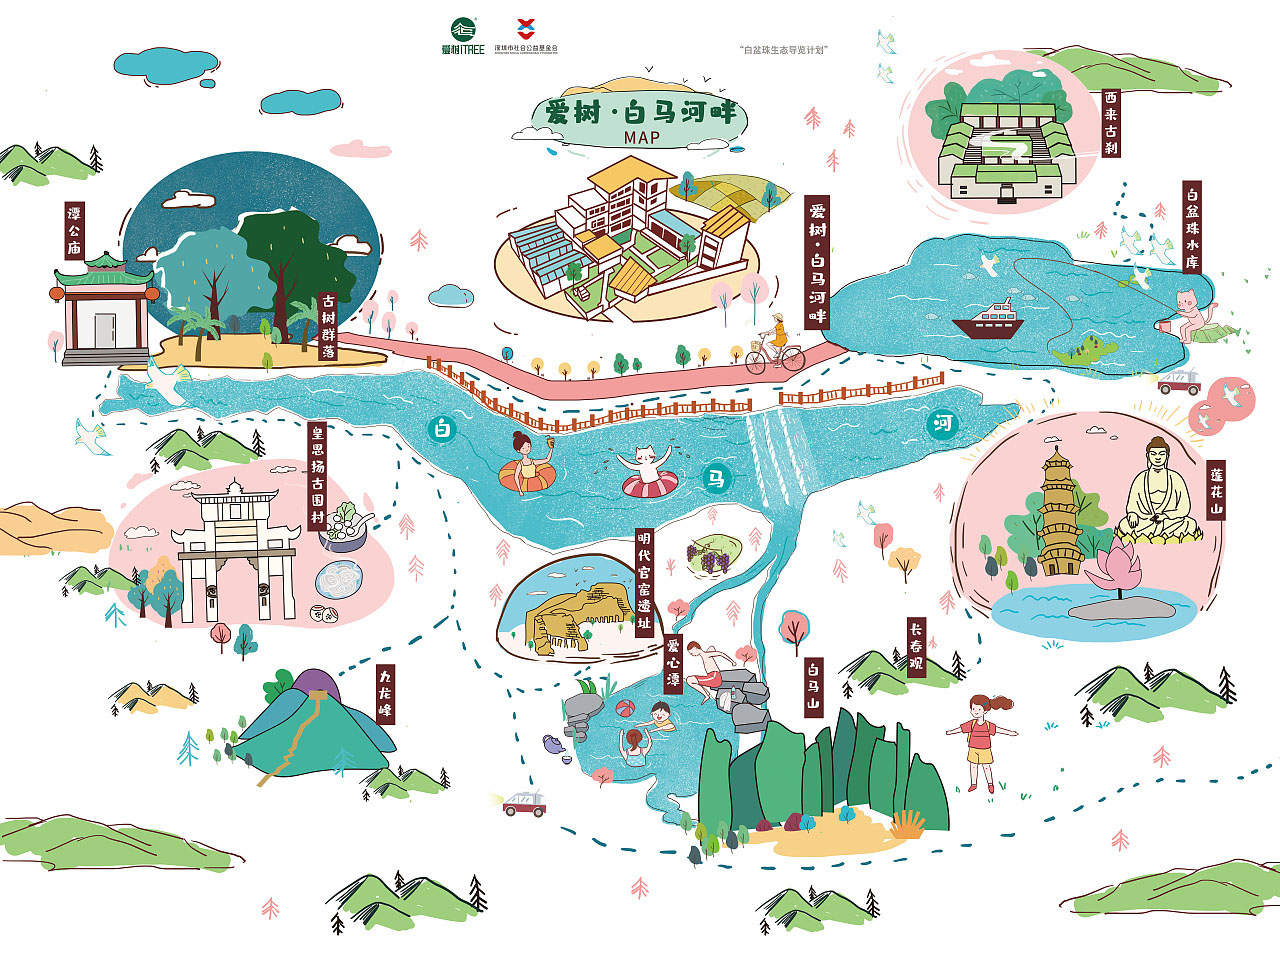 延川手绘地图景区的艺术表现